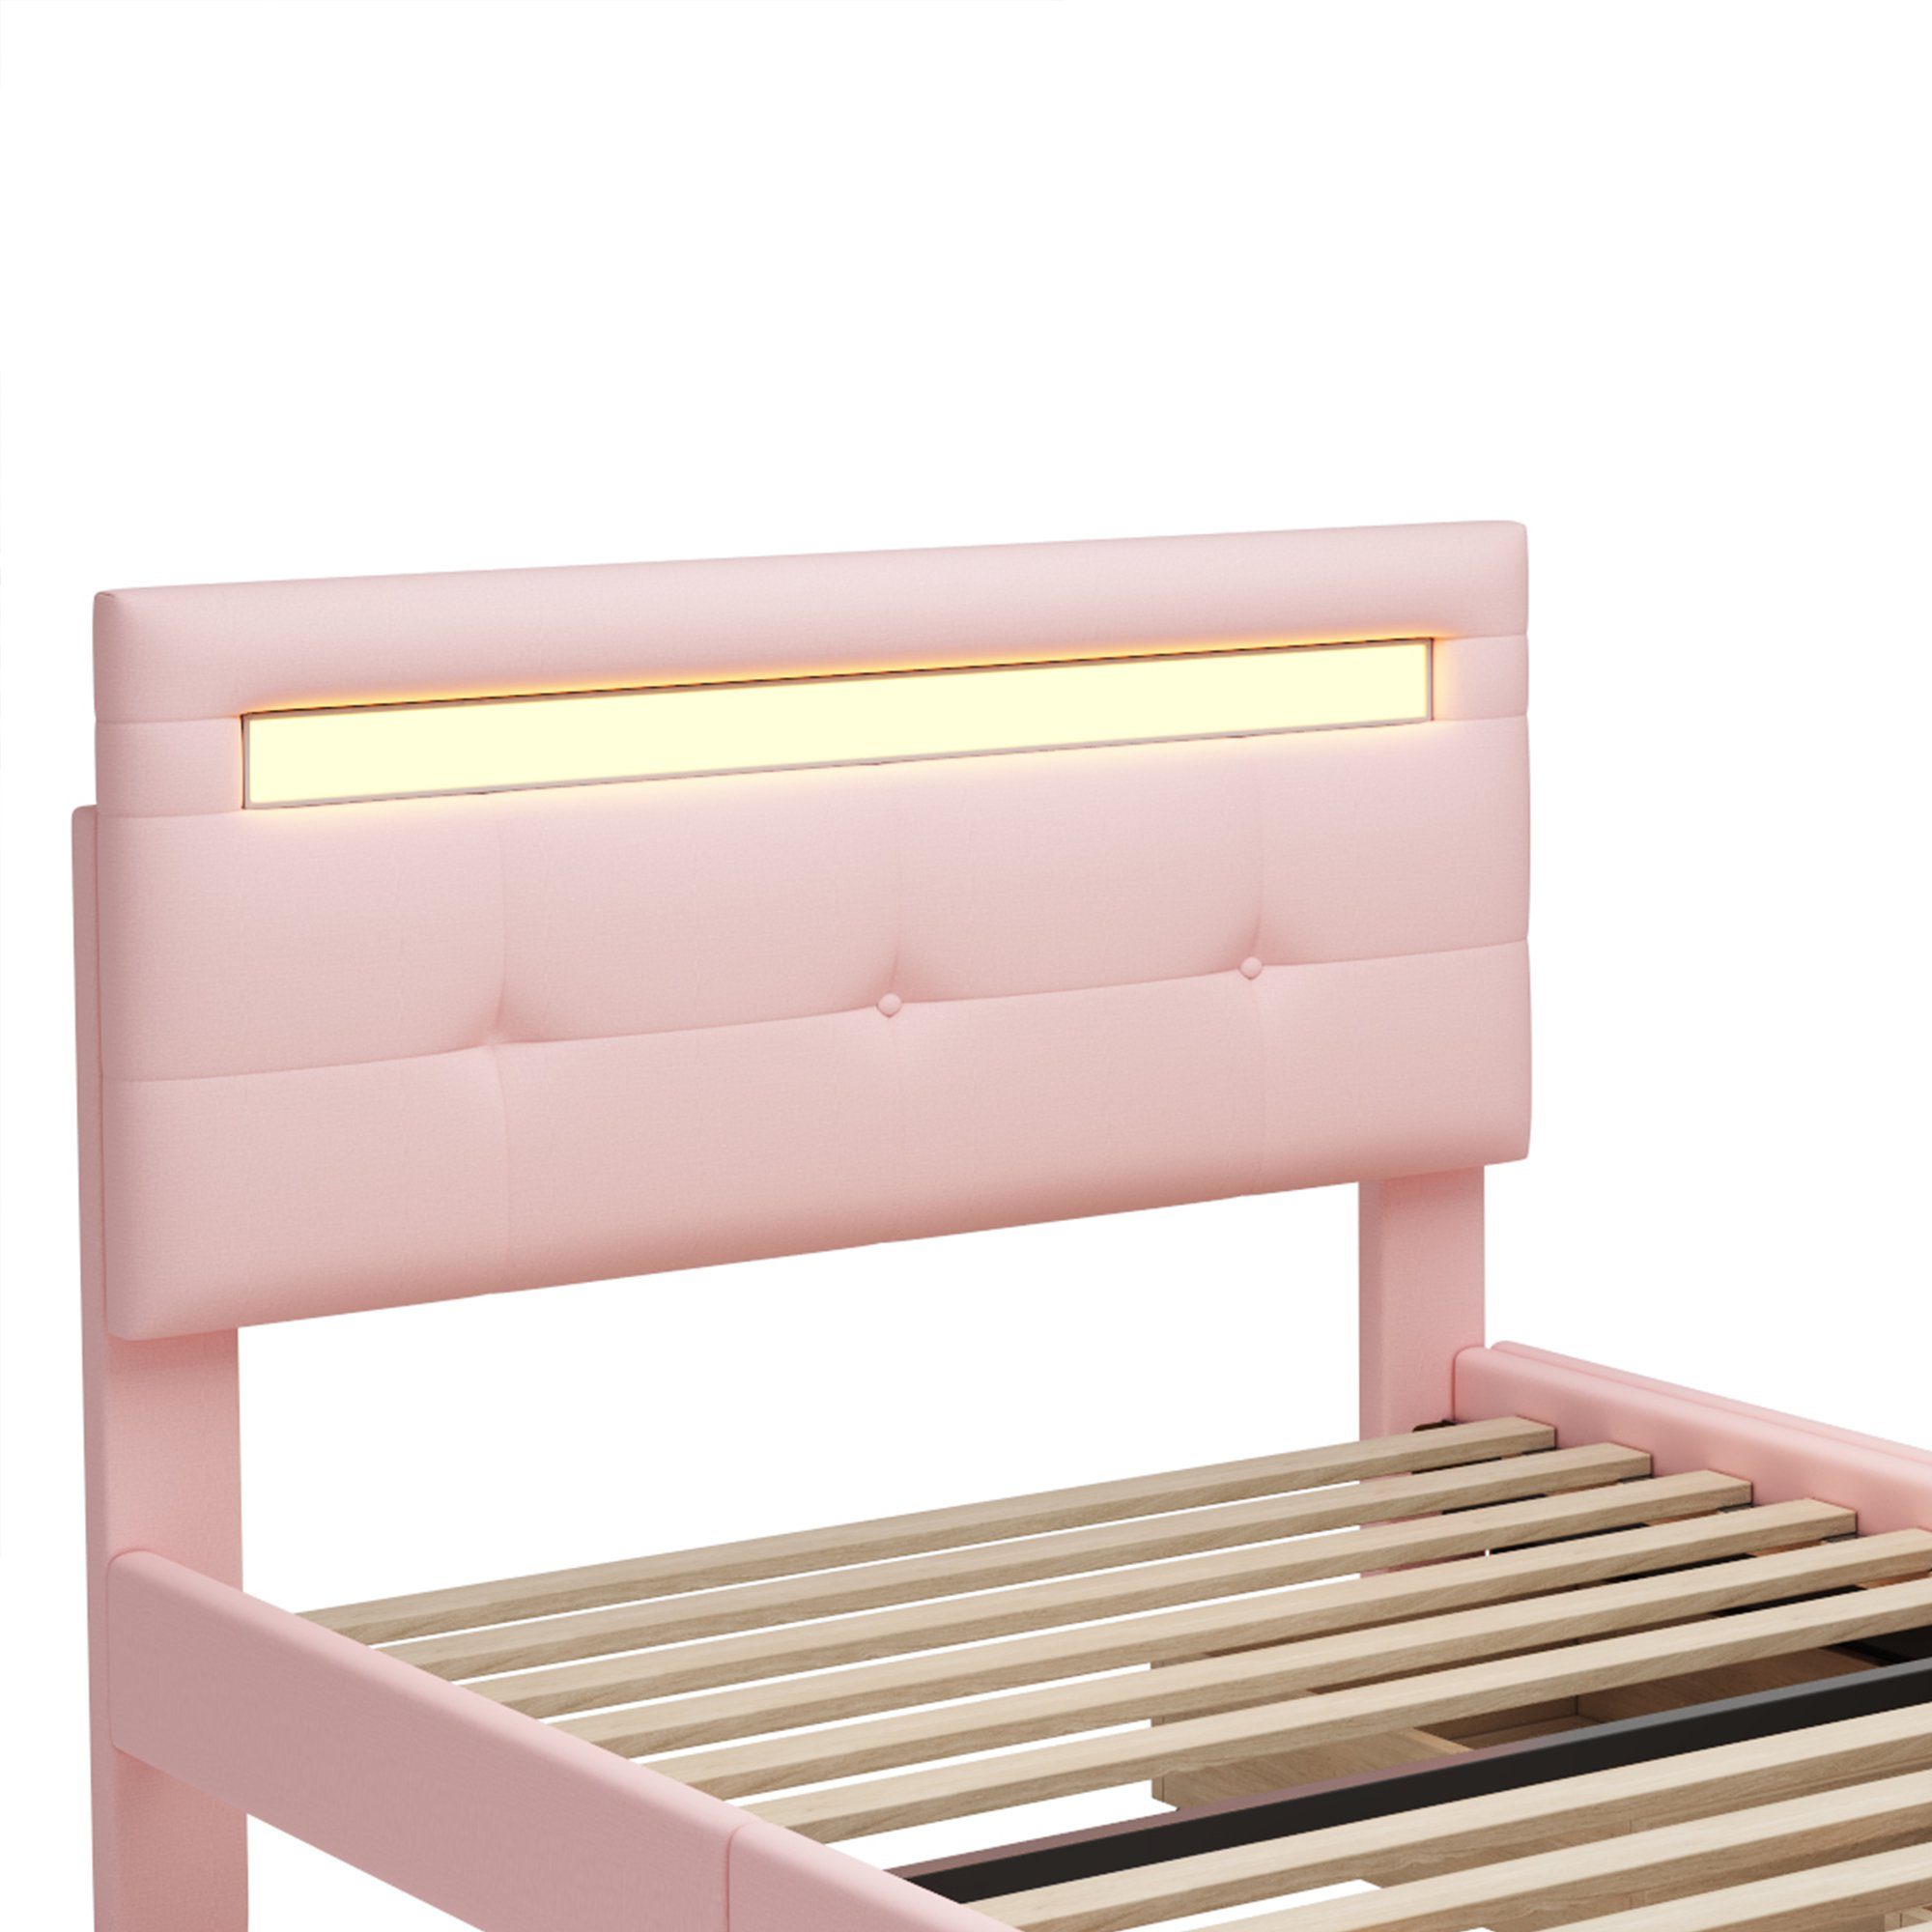 Polsterbett WISHDOR Matratze Kinderbett 2 Bett hautfreundlicher Einzelbett Jugendbett rosa LED-Leuchten, Schubladen, (mit Leinenpolsterung 90*200cm ohne flach),